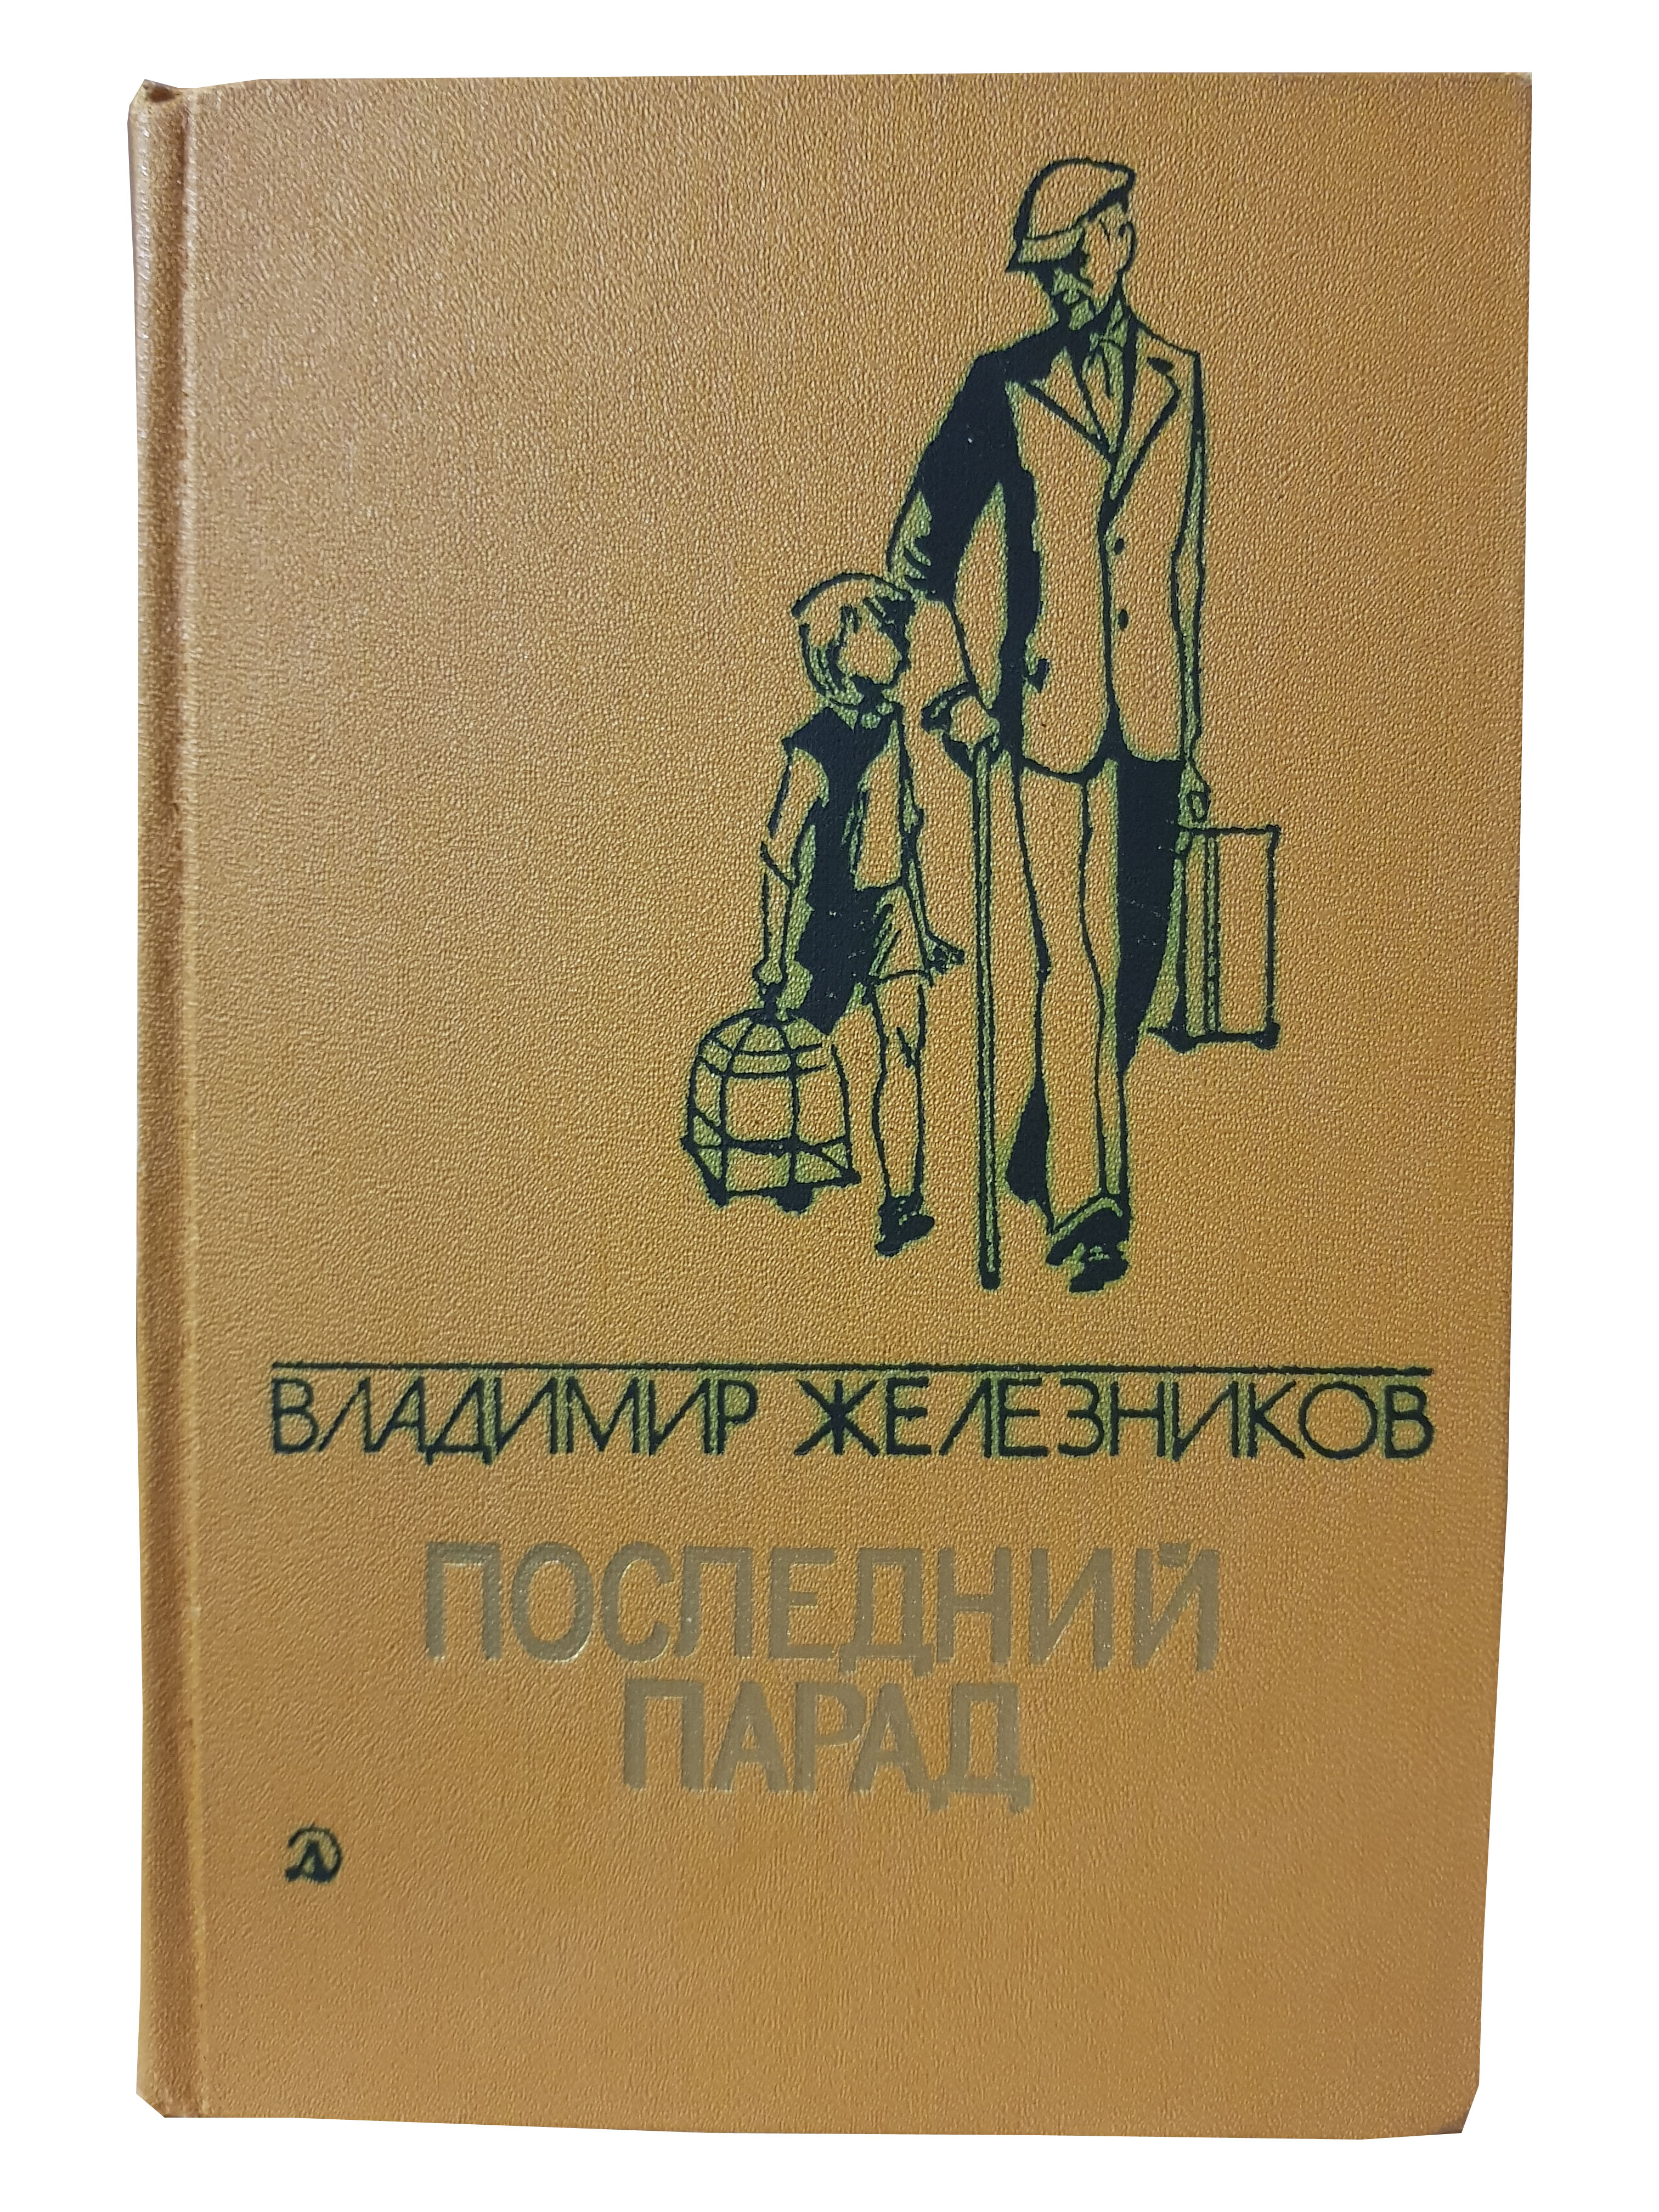 Железников В.К. (Избранные произведения в двух томах. Том 1).jpg